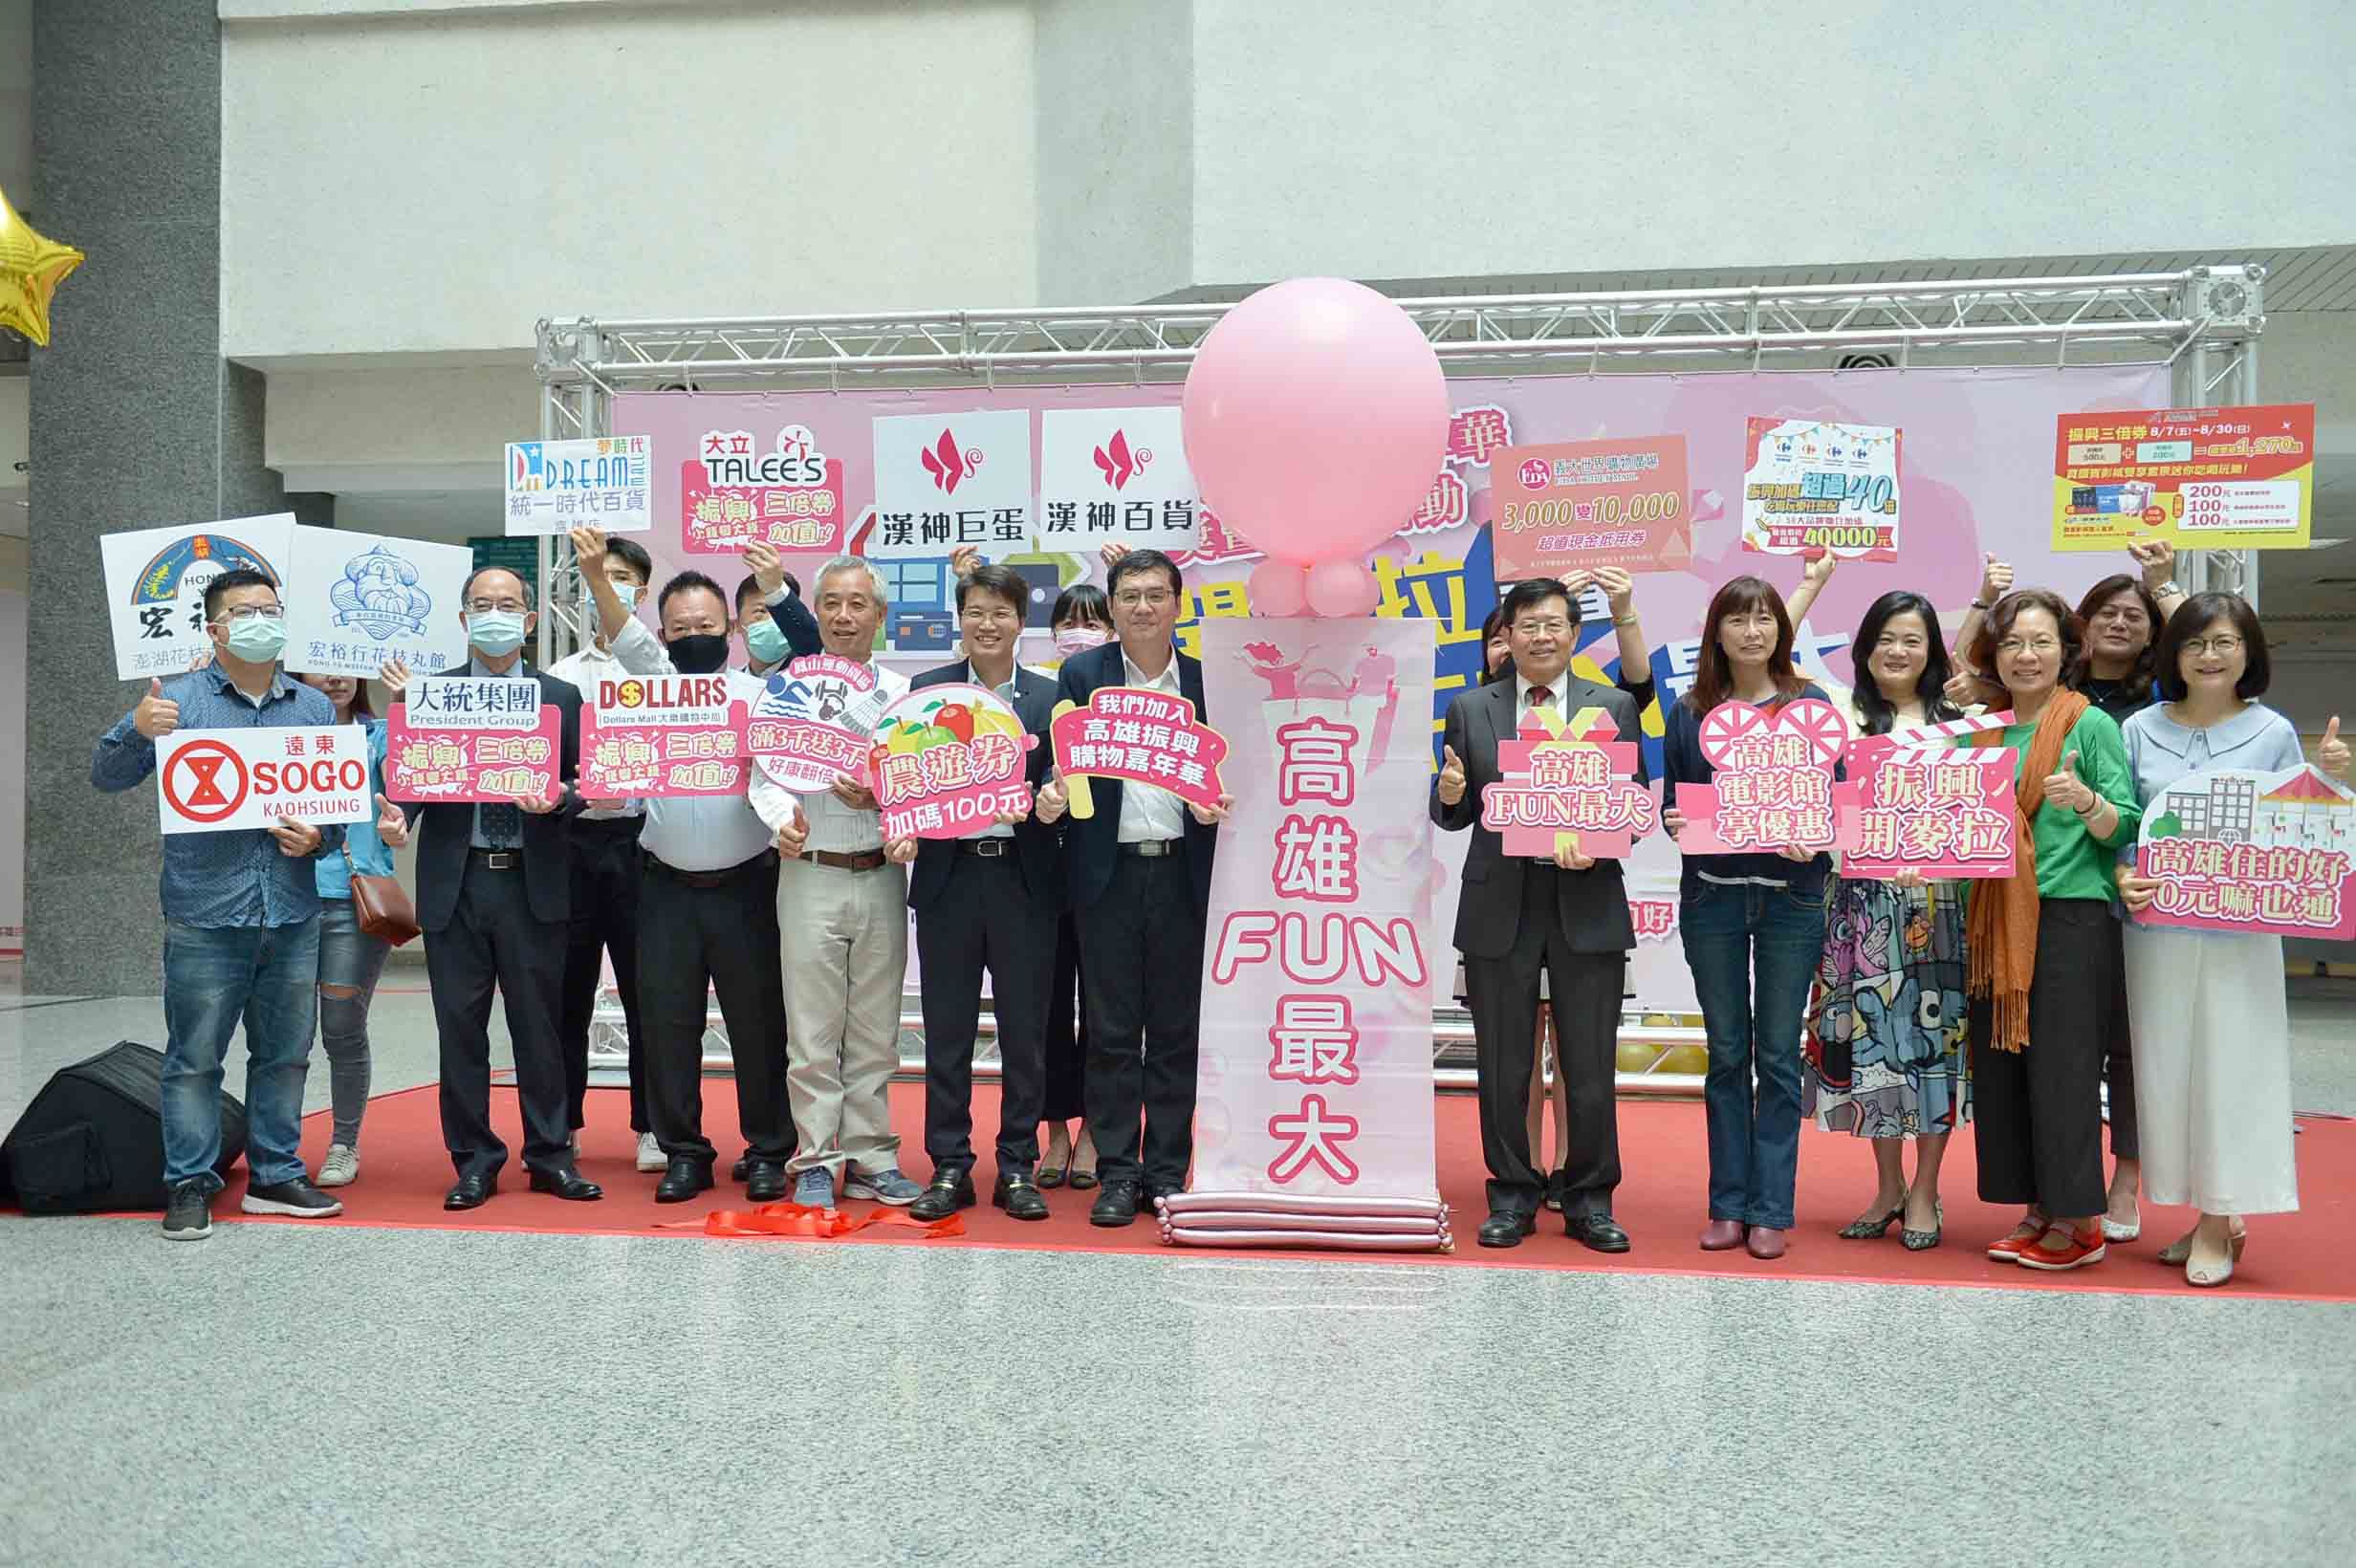 FUN大荷包抽百萬汽車  楊明州邀民眾來高雄消費登錄發票抽豪禮